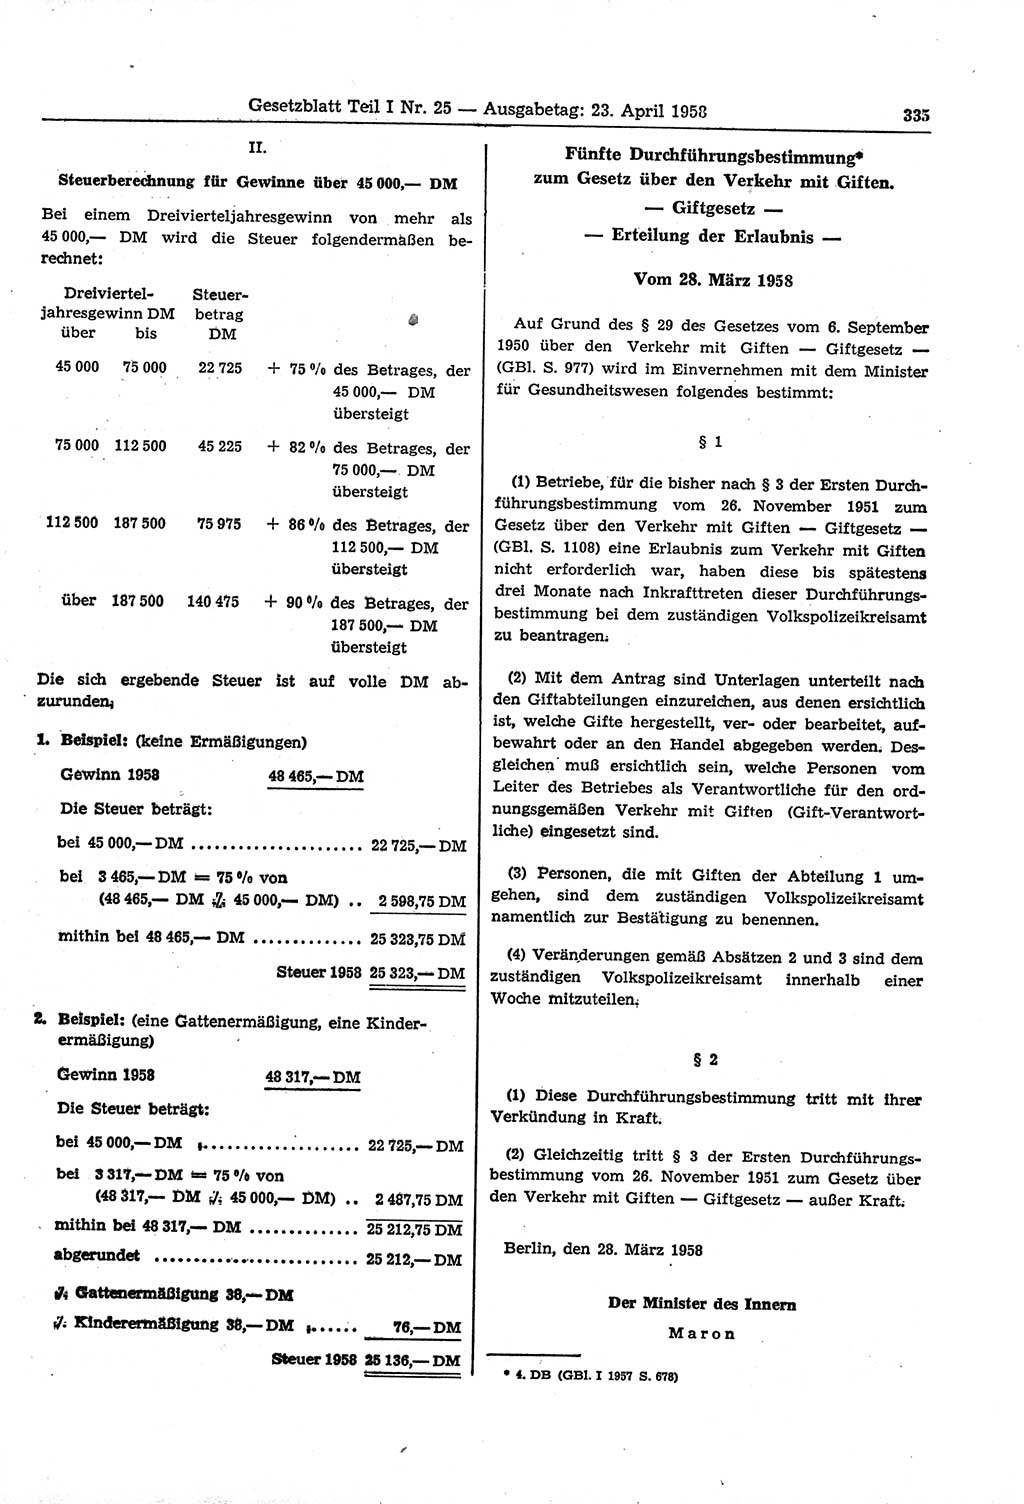 Gesetzblatt (GBl.) der Deutschen Demokratischen Republik (DDR) Teil Ⅰ 1958, Seite 335 (GBl. DDR Ⅰ 1958, S. 335)